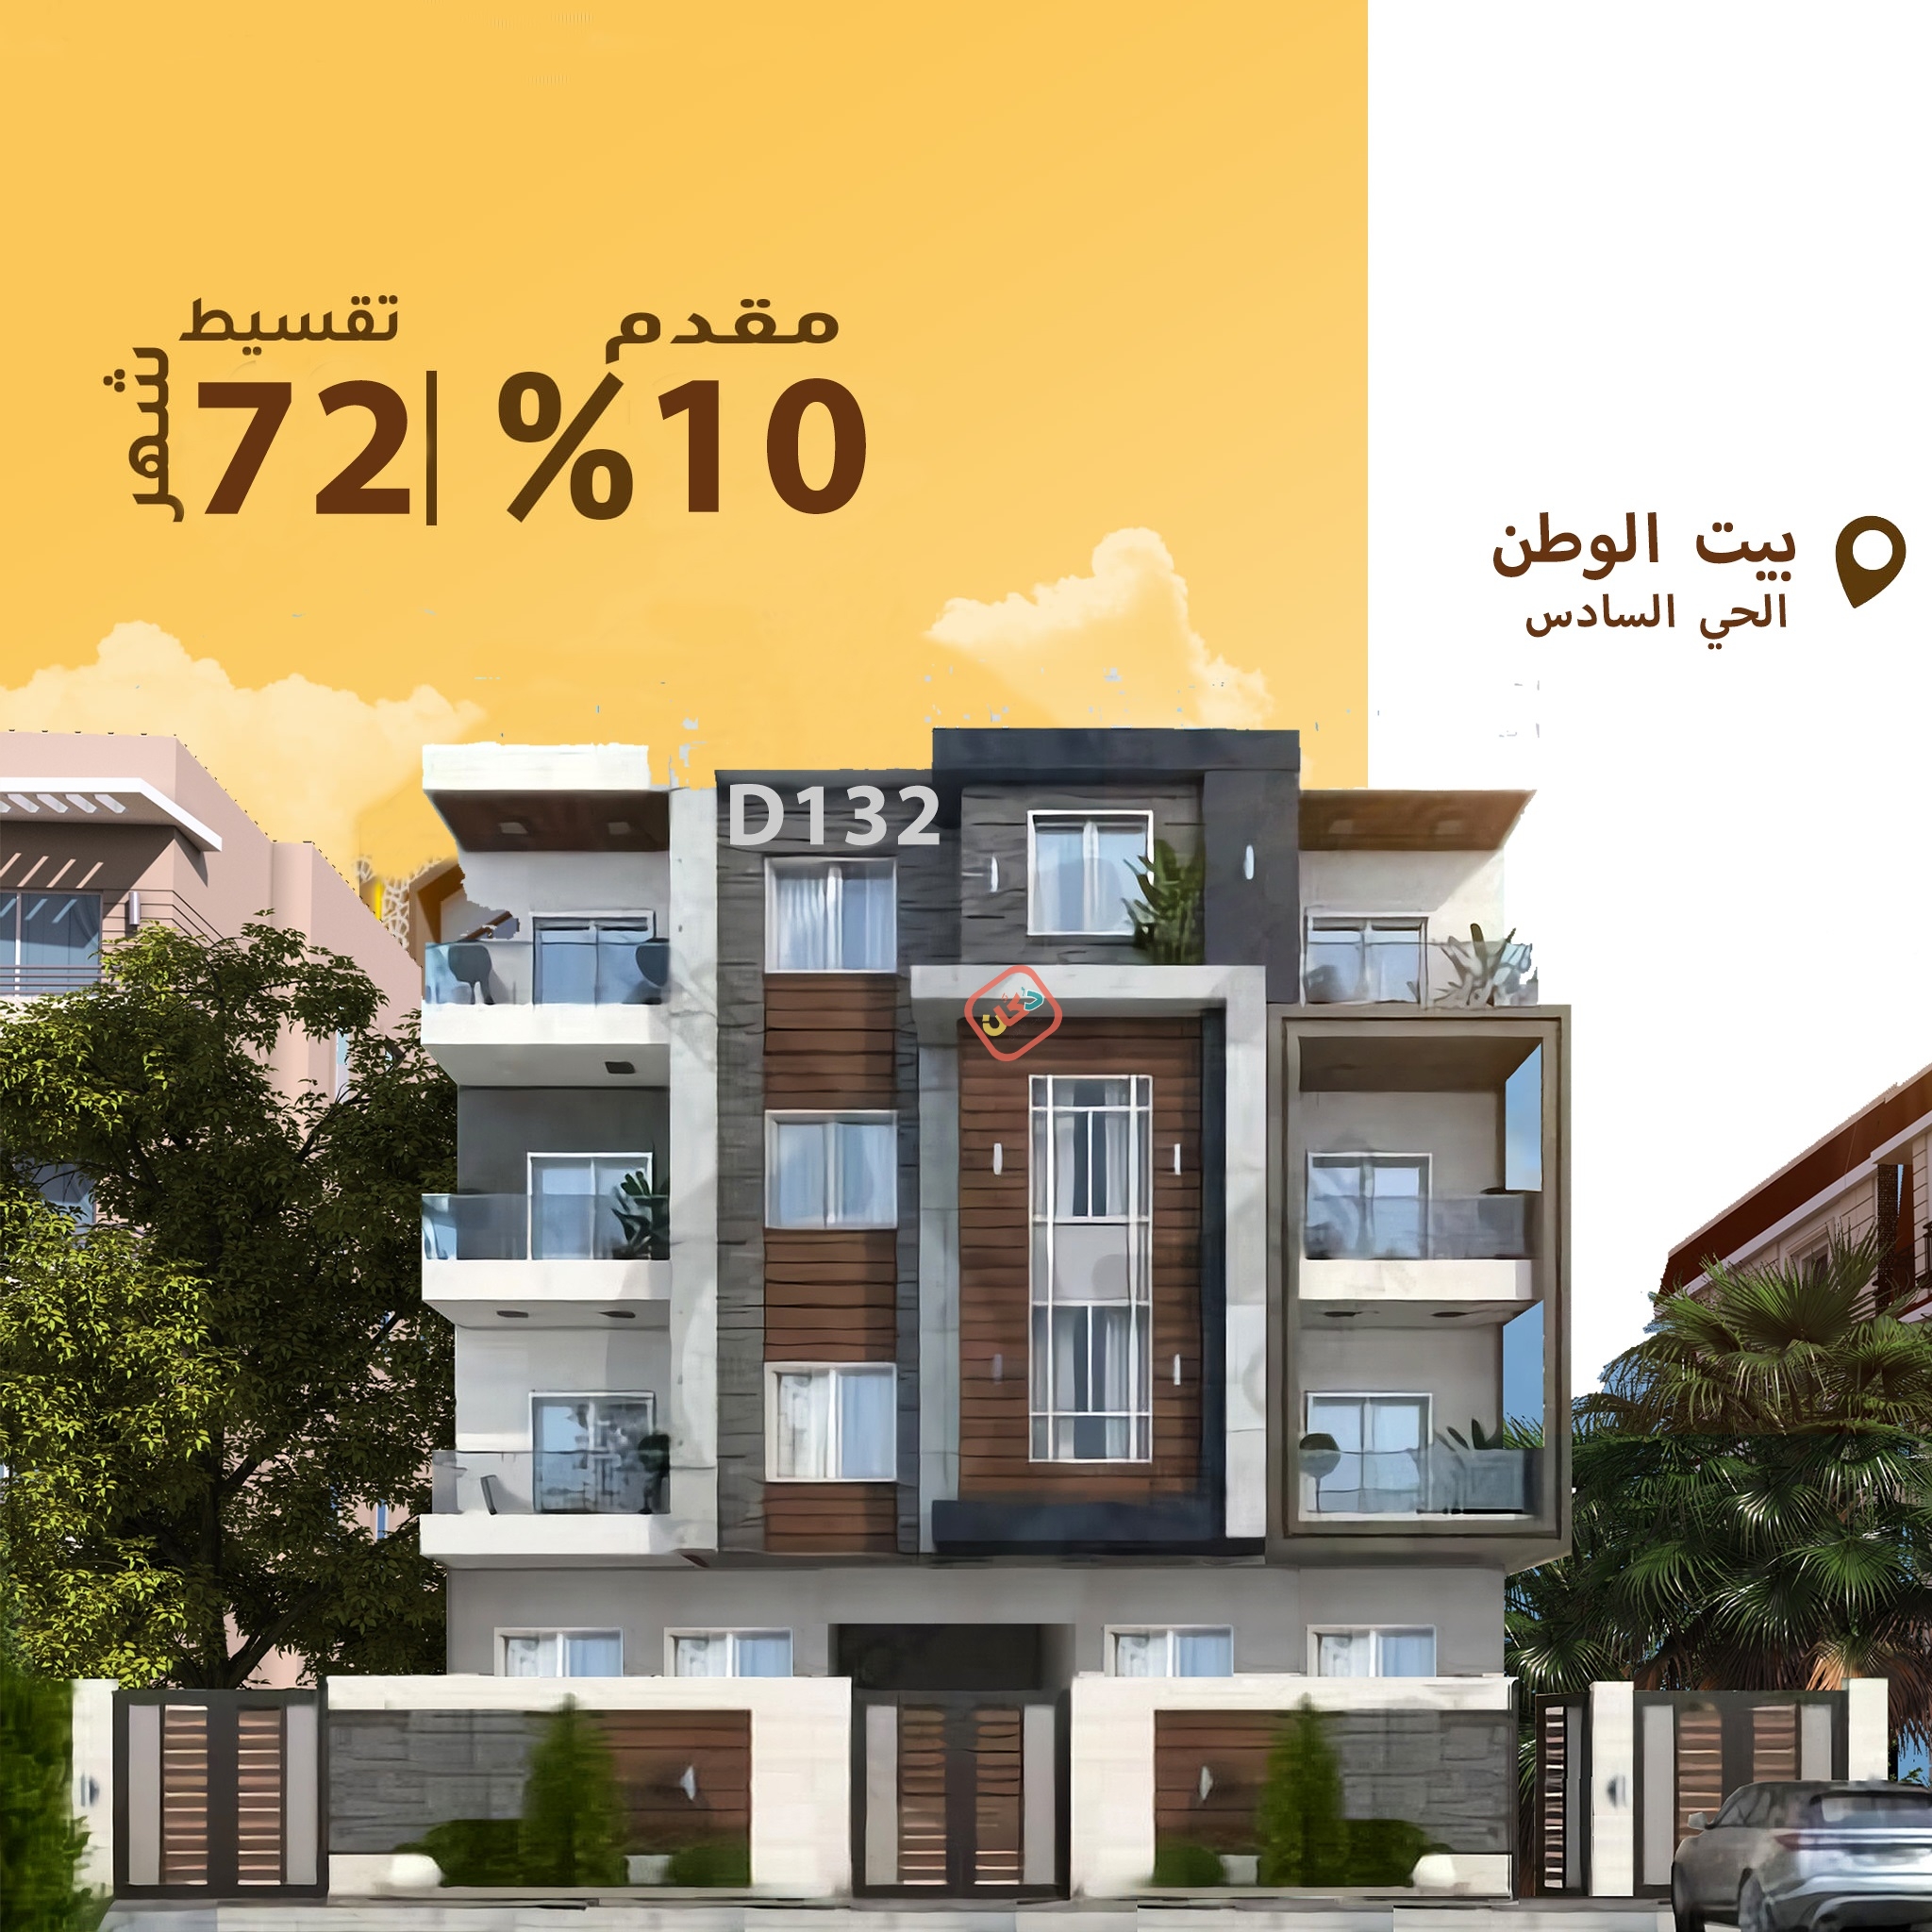 ارض سكنية للبيع من المالك بمساحة 624.5 بالتجمع الخامس بيت الوطن